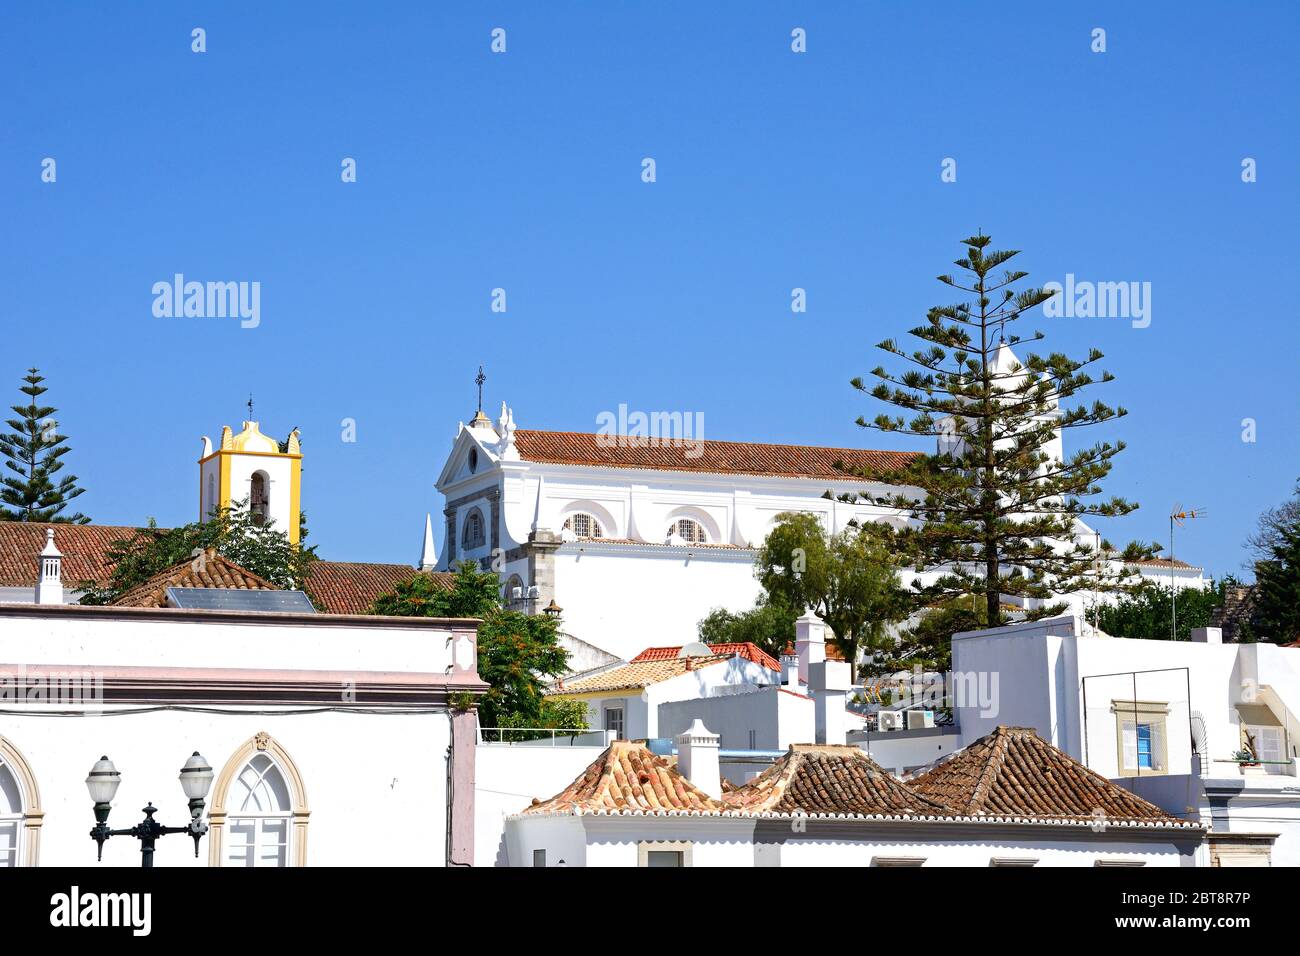 Edifici del centro storico con la chiesa di Santa Maria e bastioni del castello sul retro., Tavira, Algarve, Portogallo, Europa. Foto Stock